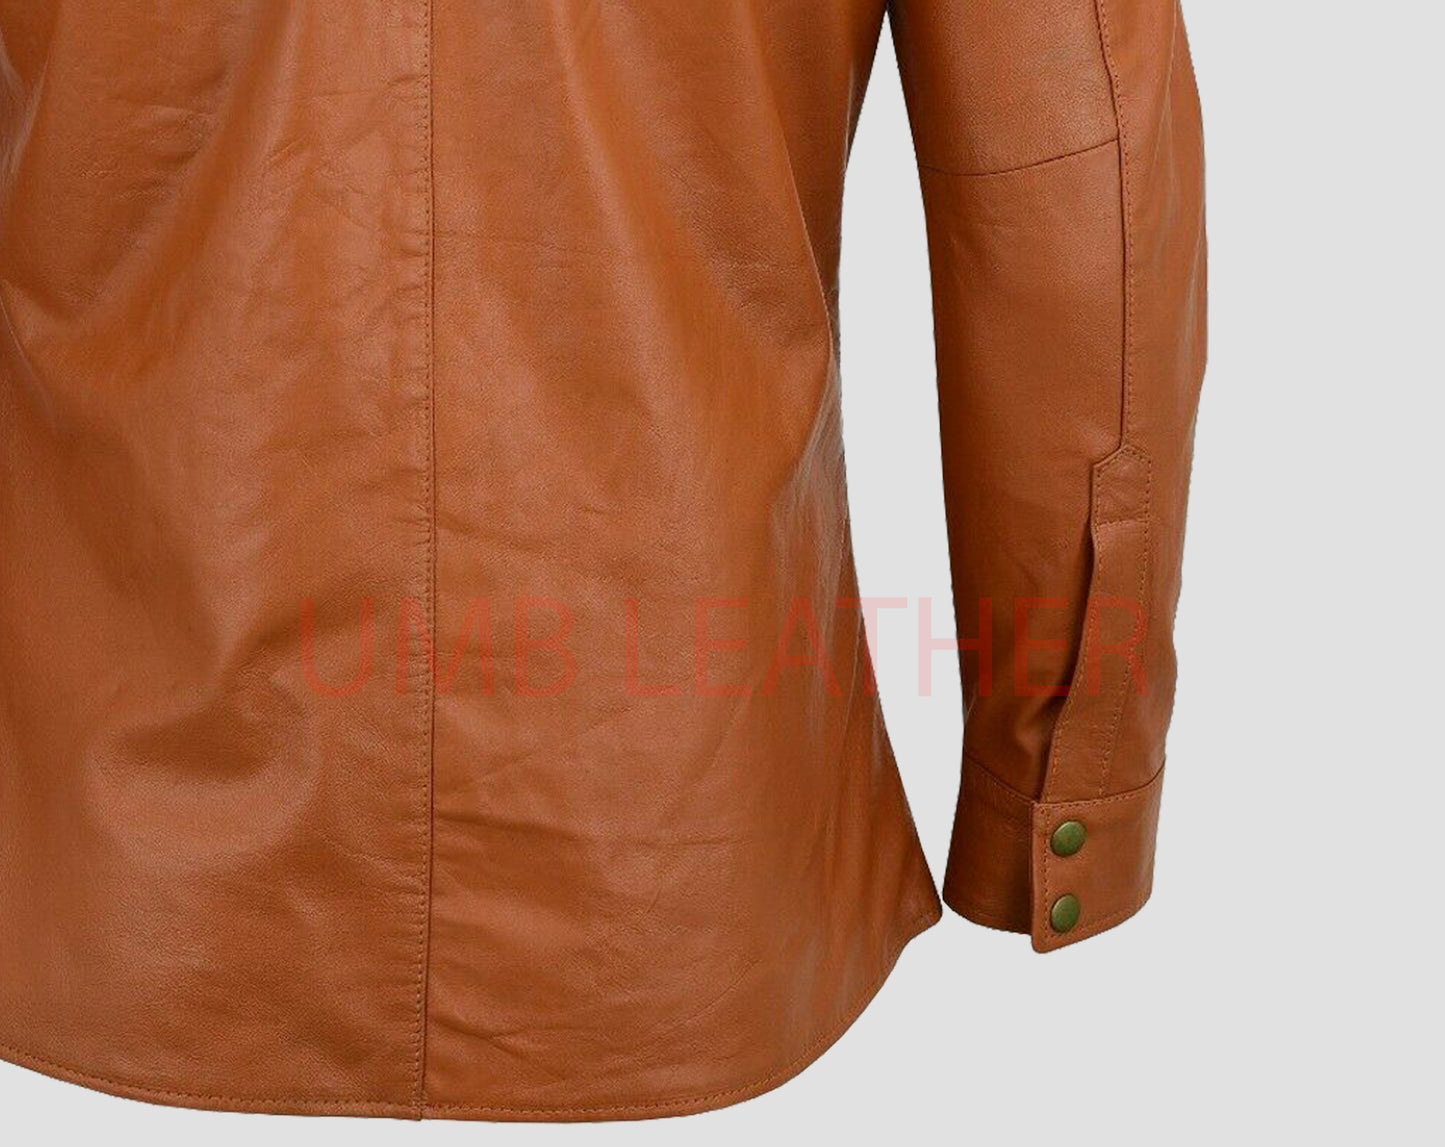 Leather Shirt Jacket Men